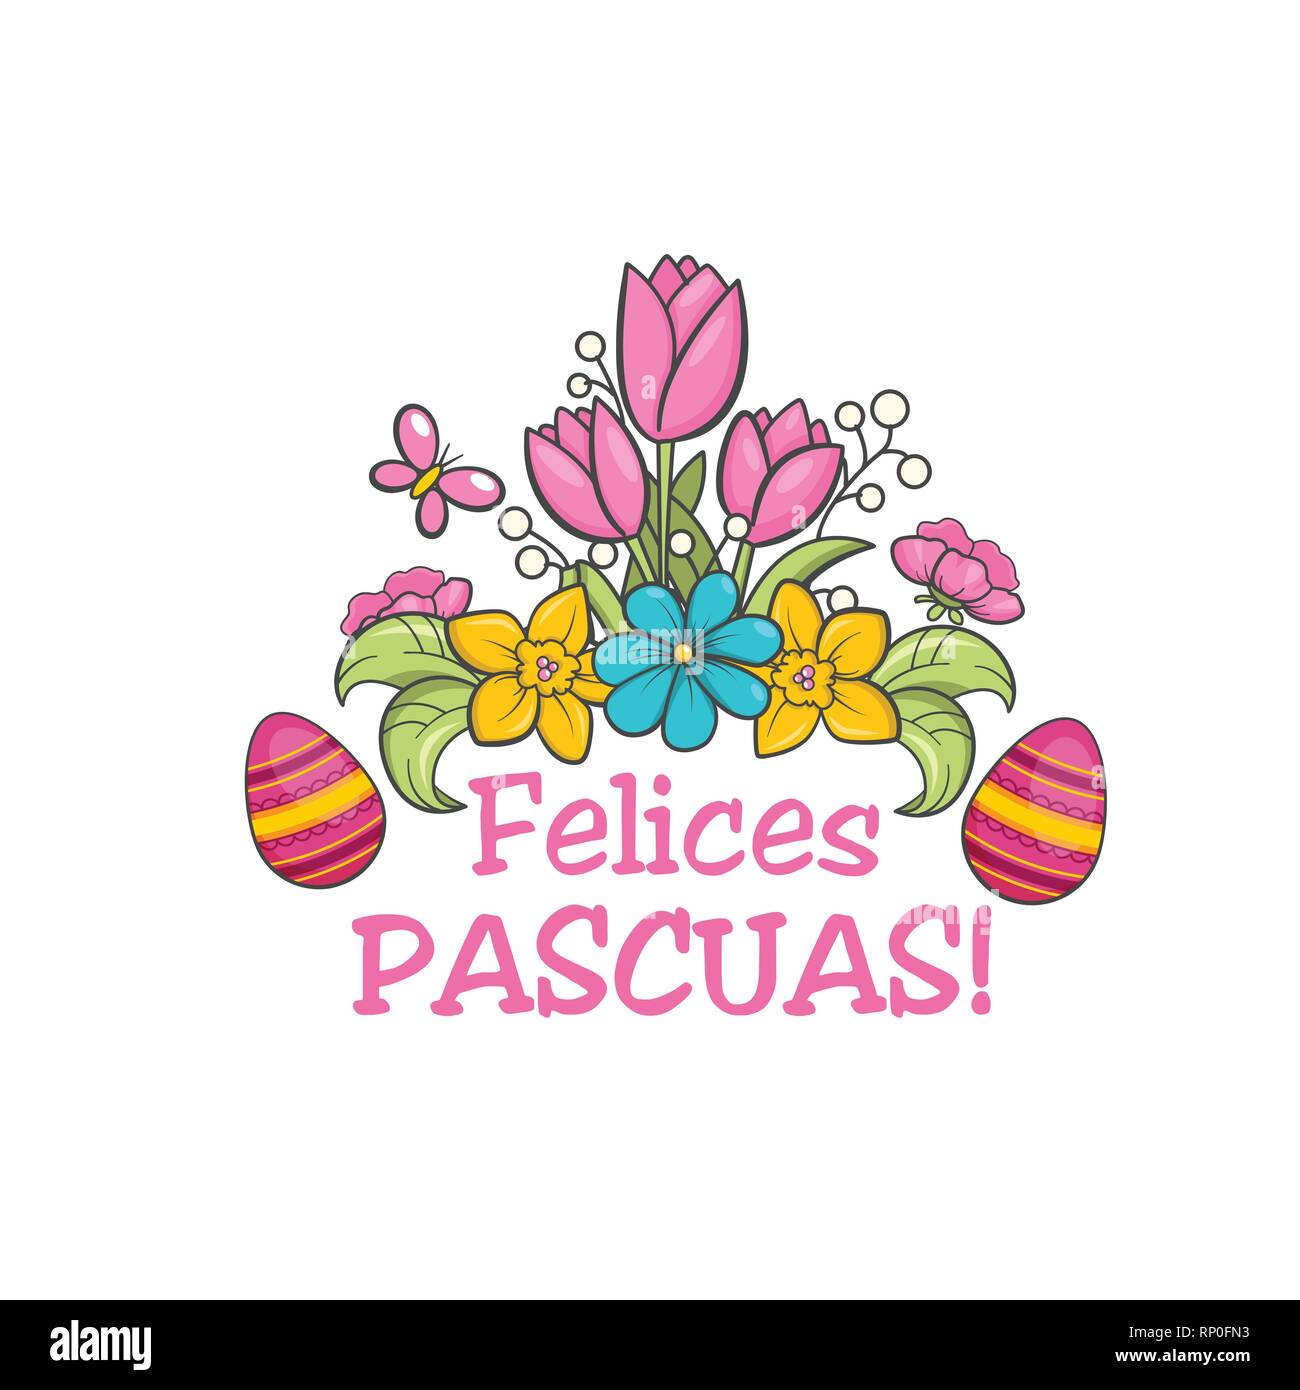 Feliz pascua, spanish easter greeting flower card Stock Vector